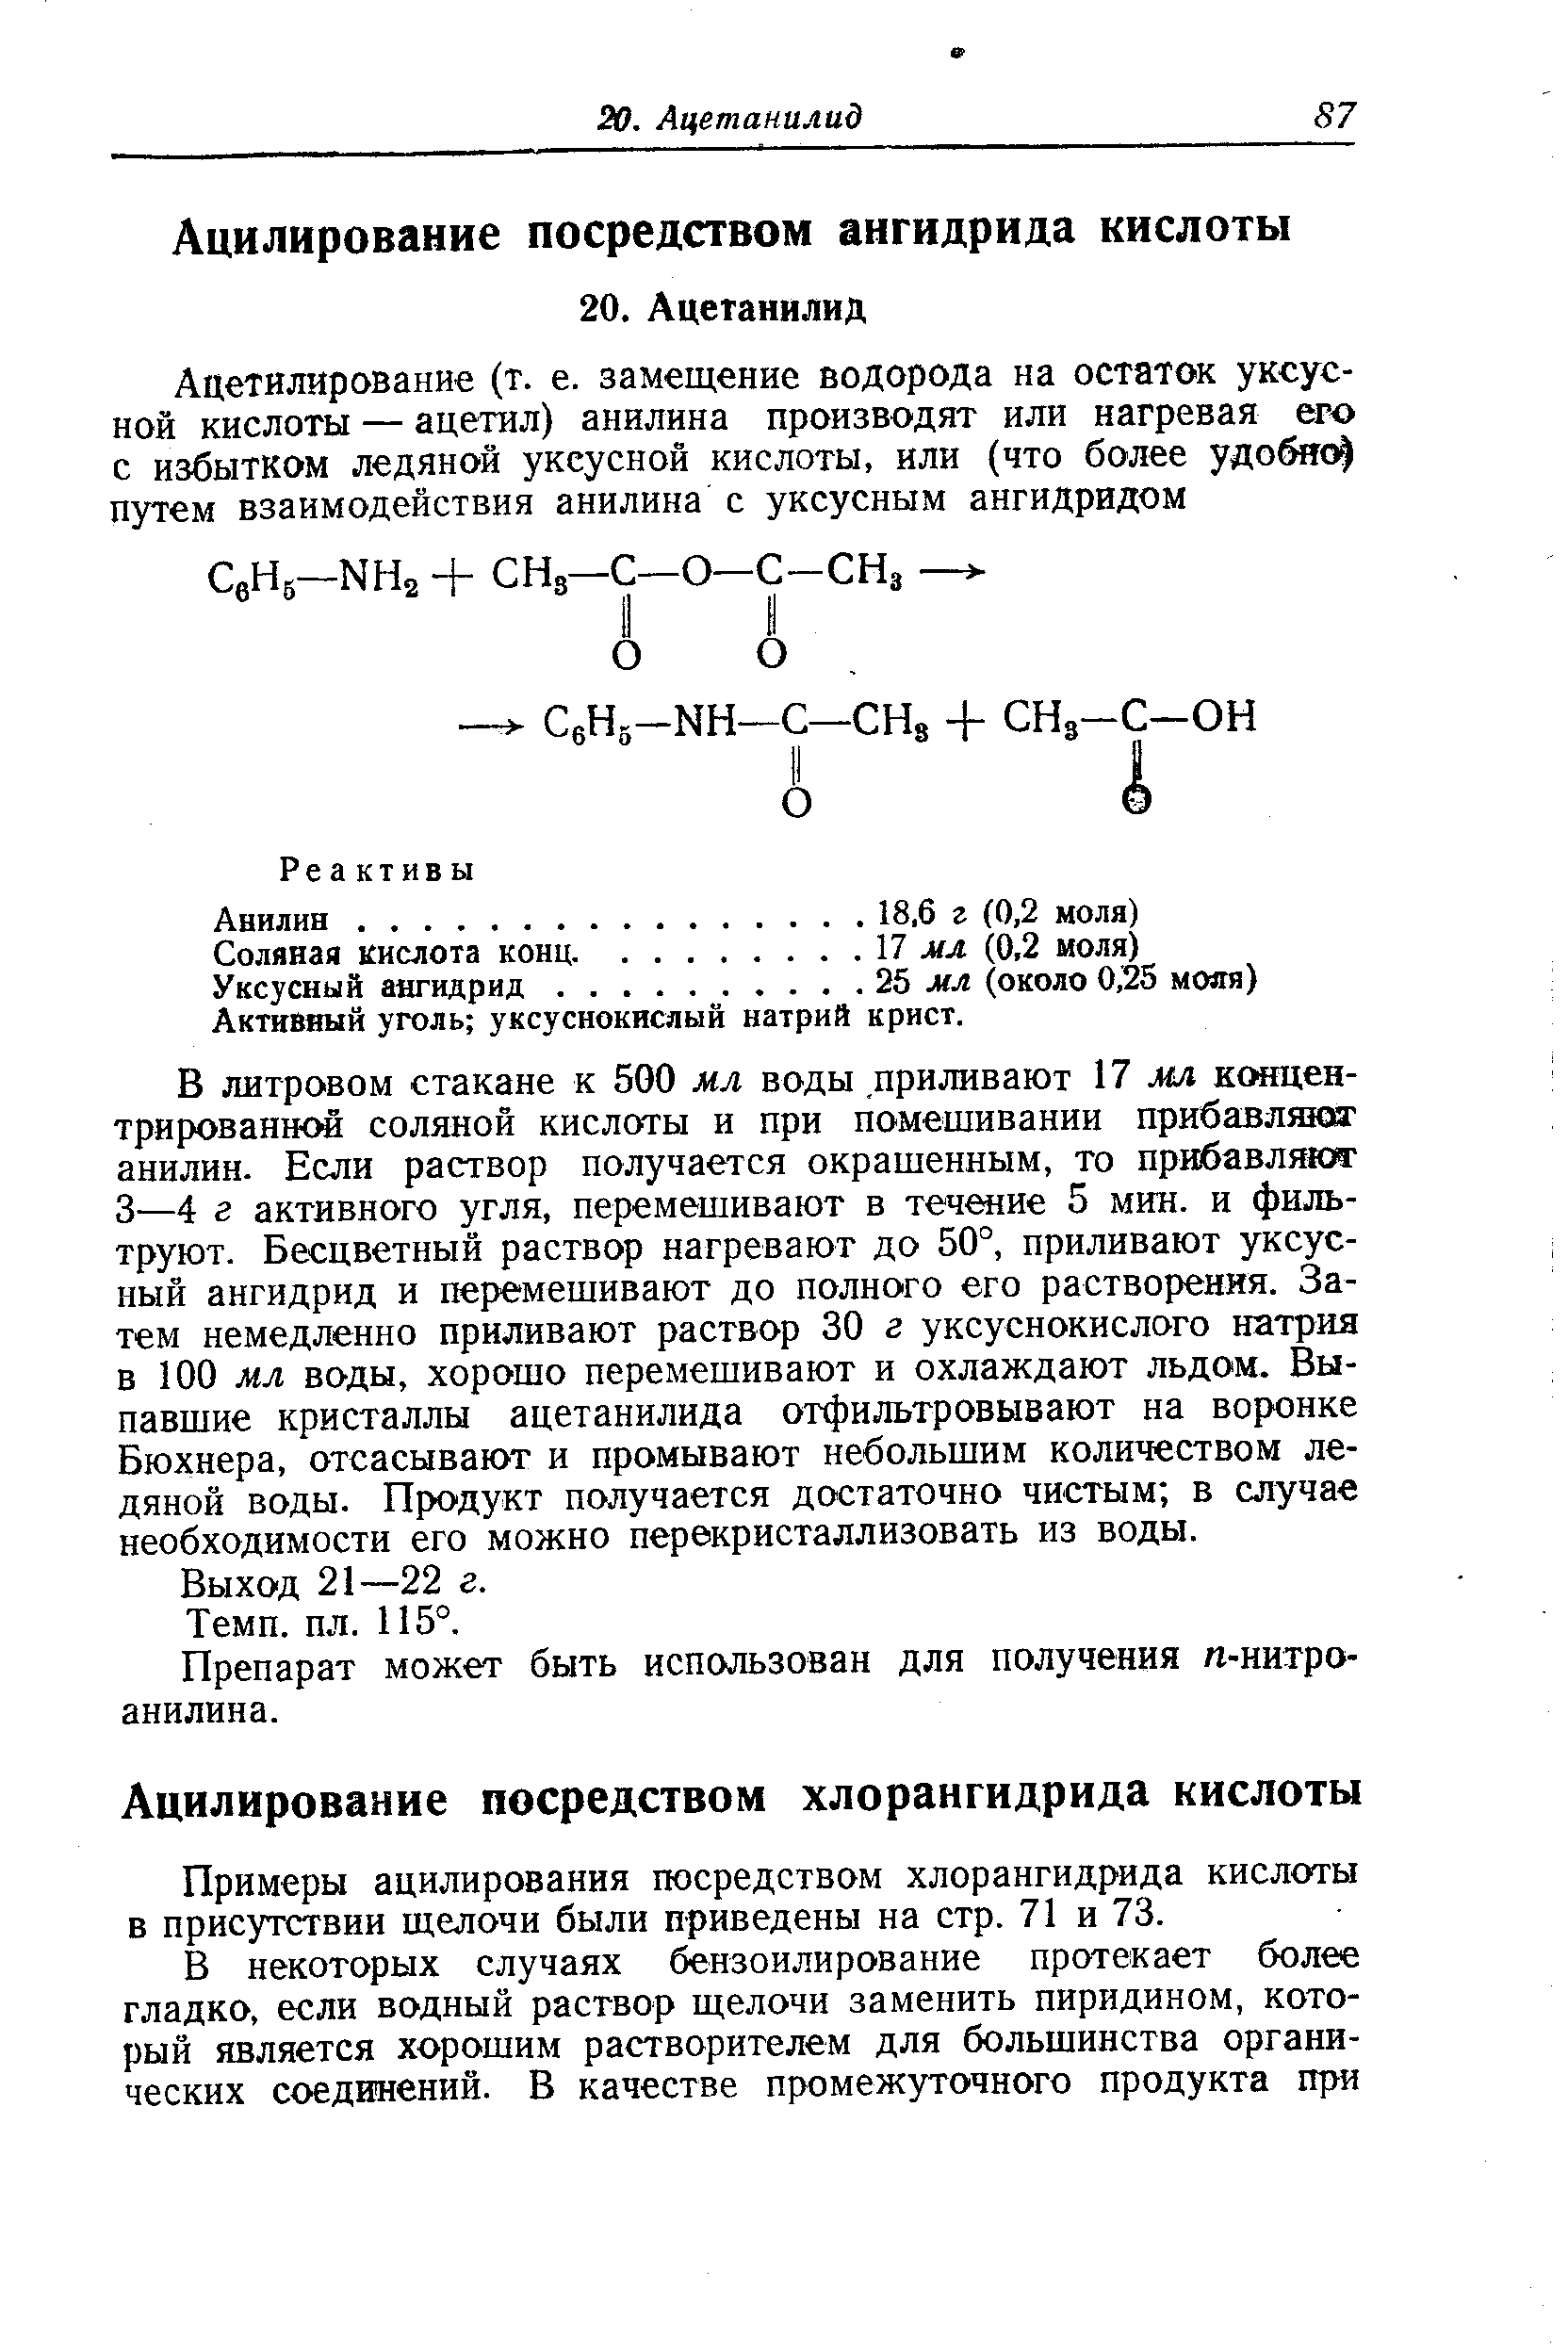 Примеры ацилирования посредством хлорангидрида кислоты в присутствии щелочи были приведены на стр. 71 и 73.